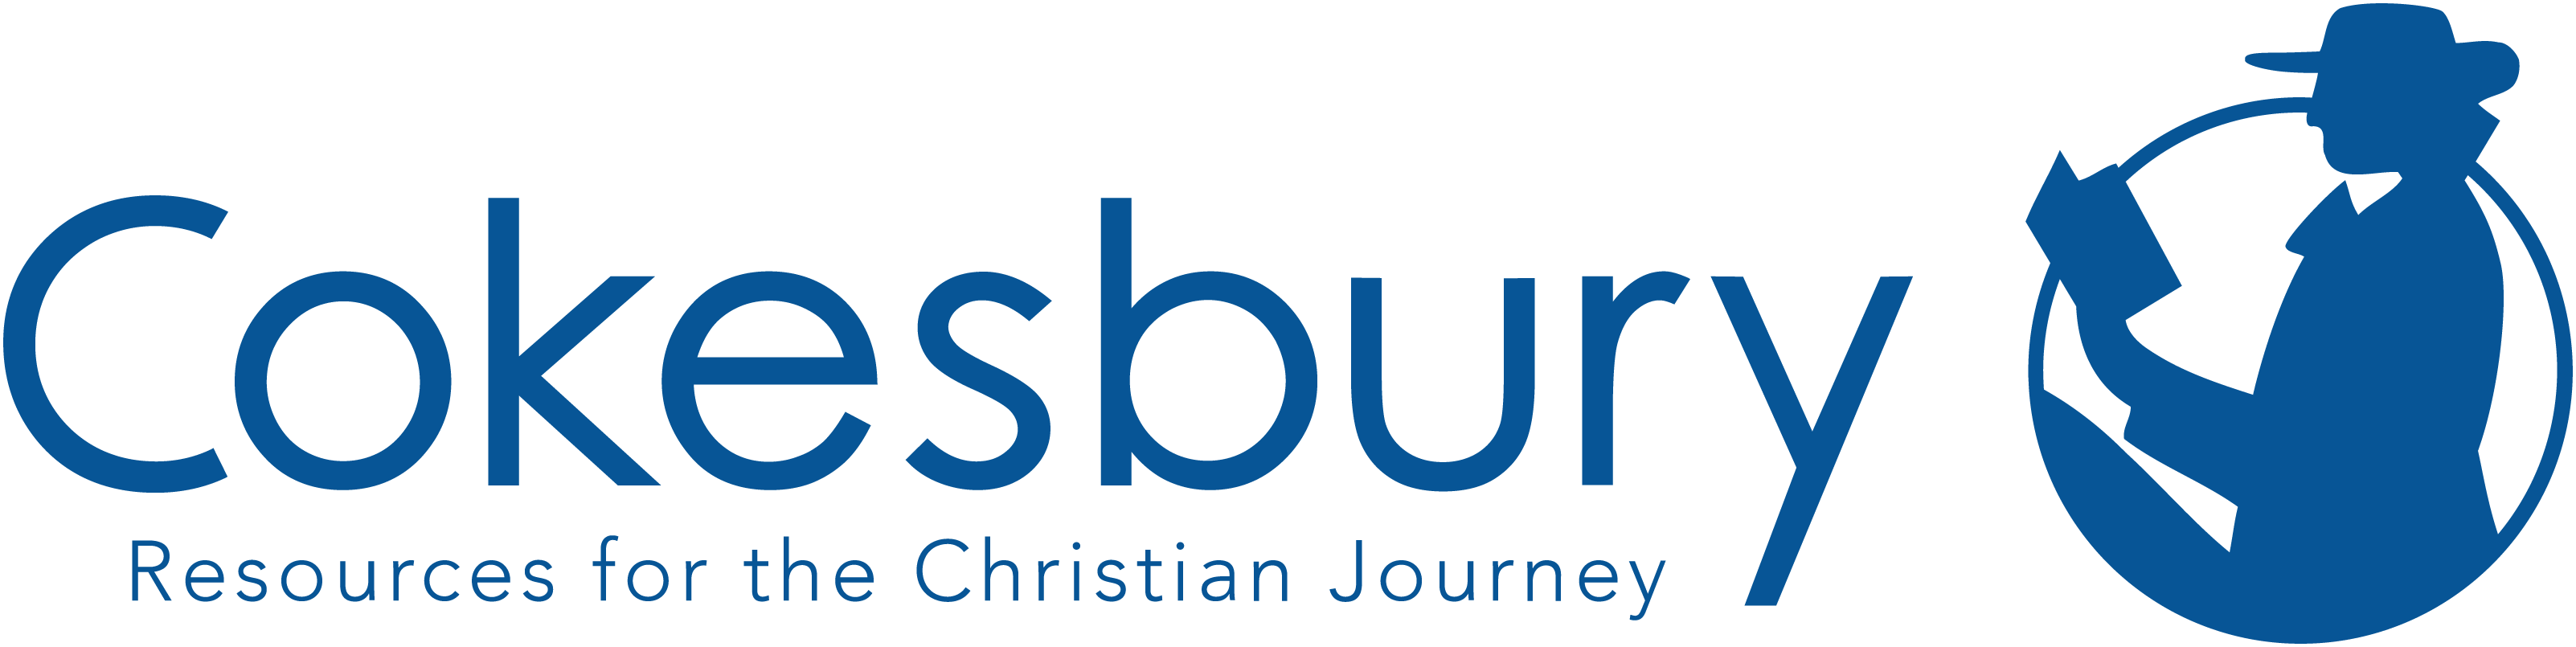 Cokesbury.com logo, courtesy of The United Methodist Publishing House